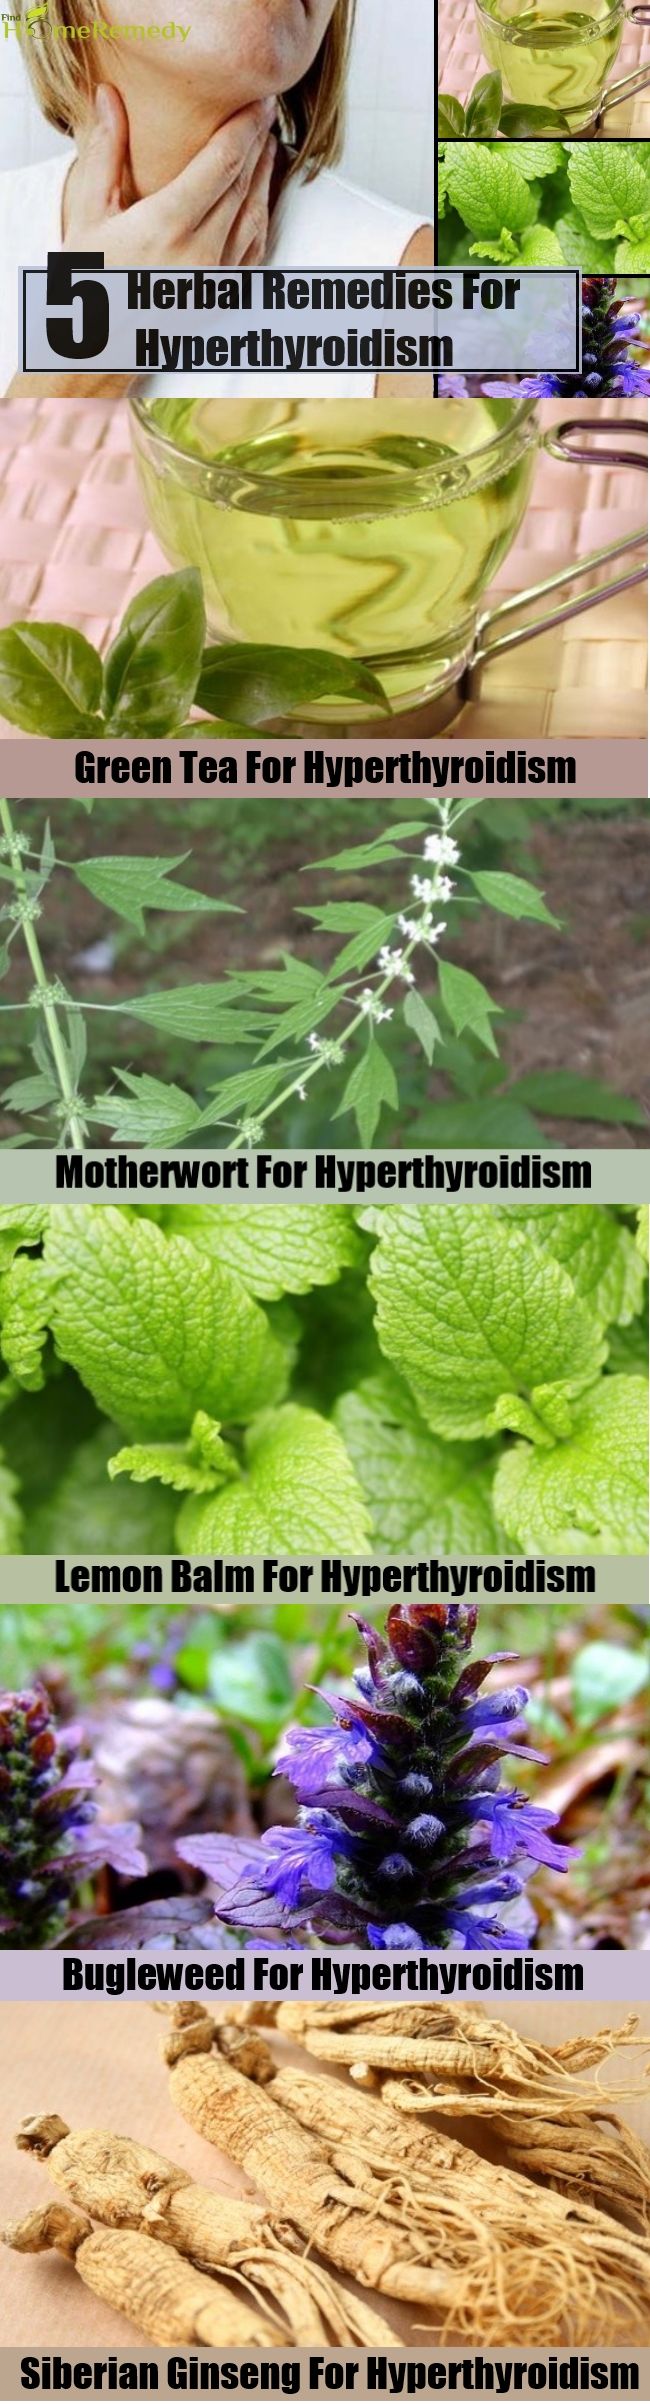 5 Remèdes naturels pour l'hyperthyroïdie